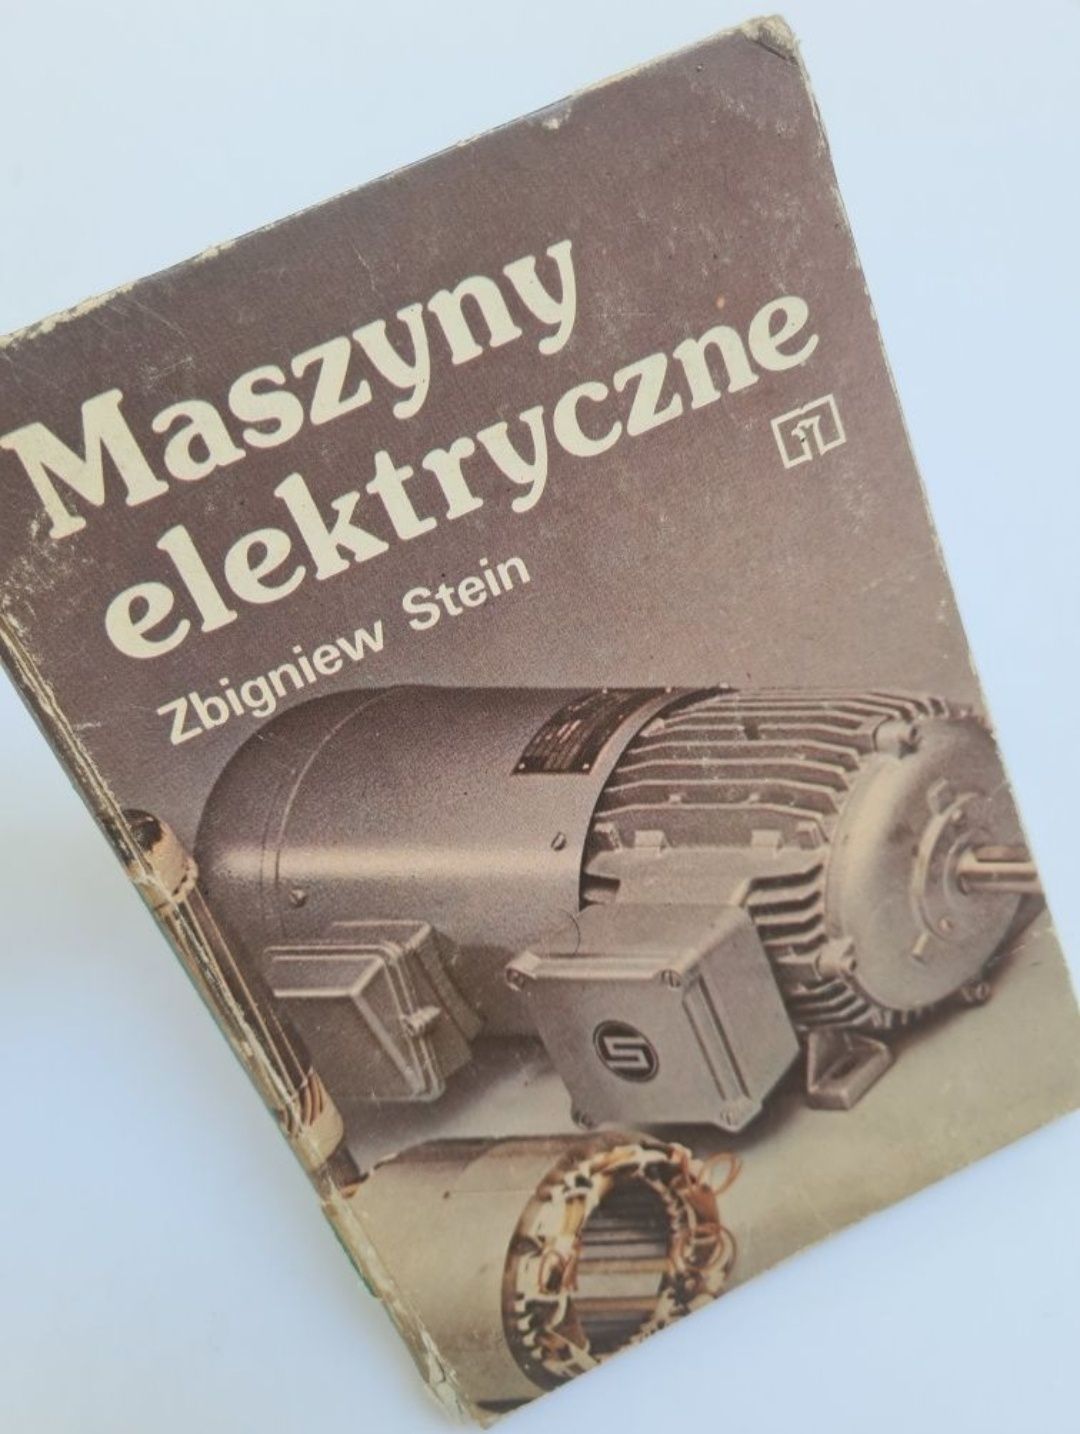 Maszyny elektryczne - Zbigniew Stein. Książka